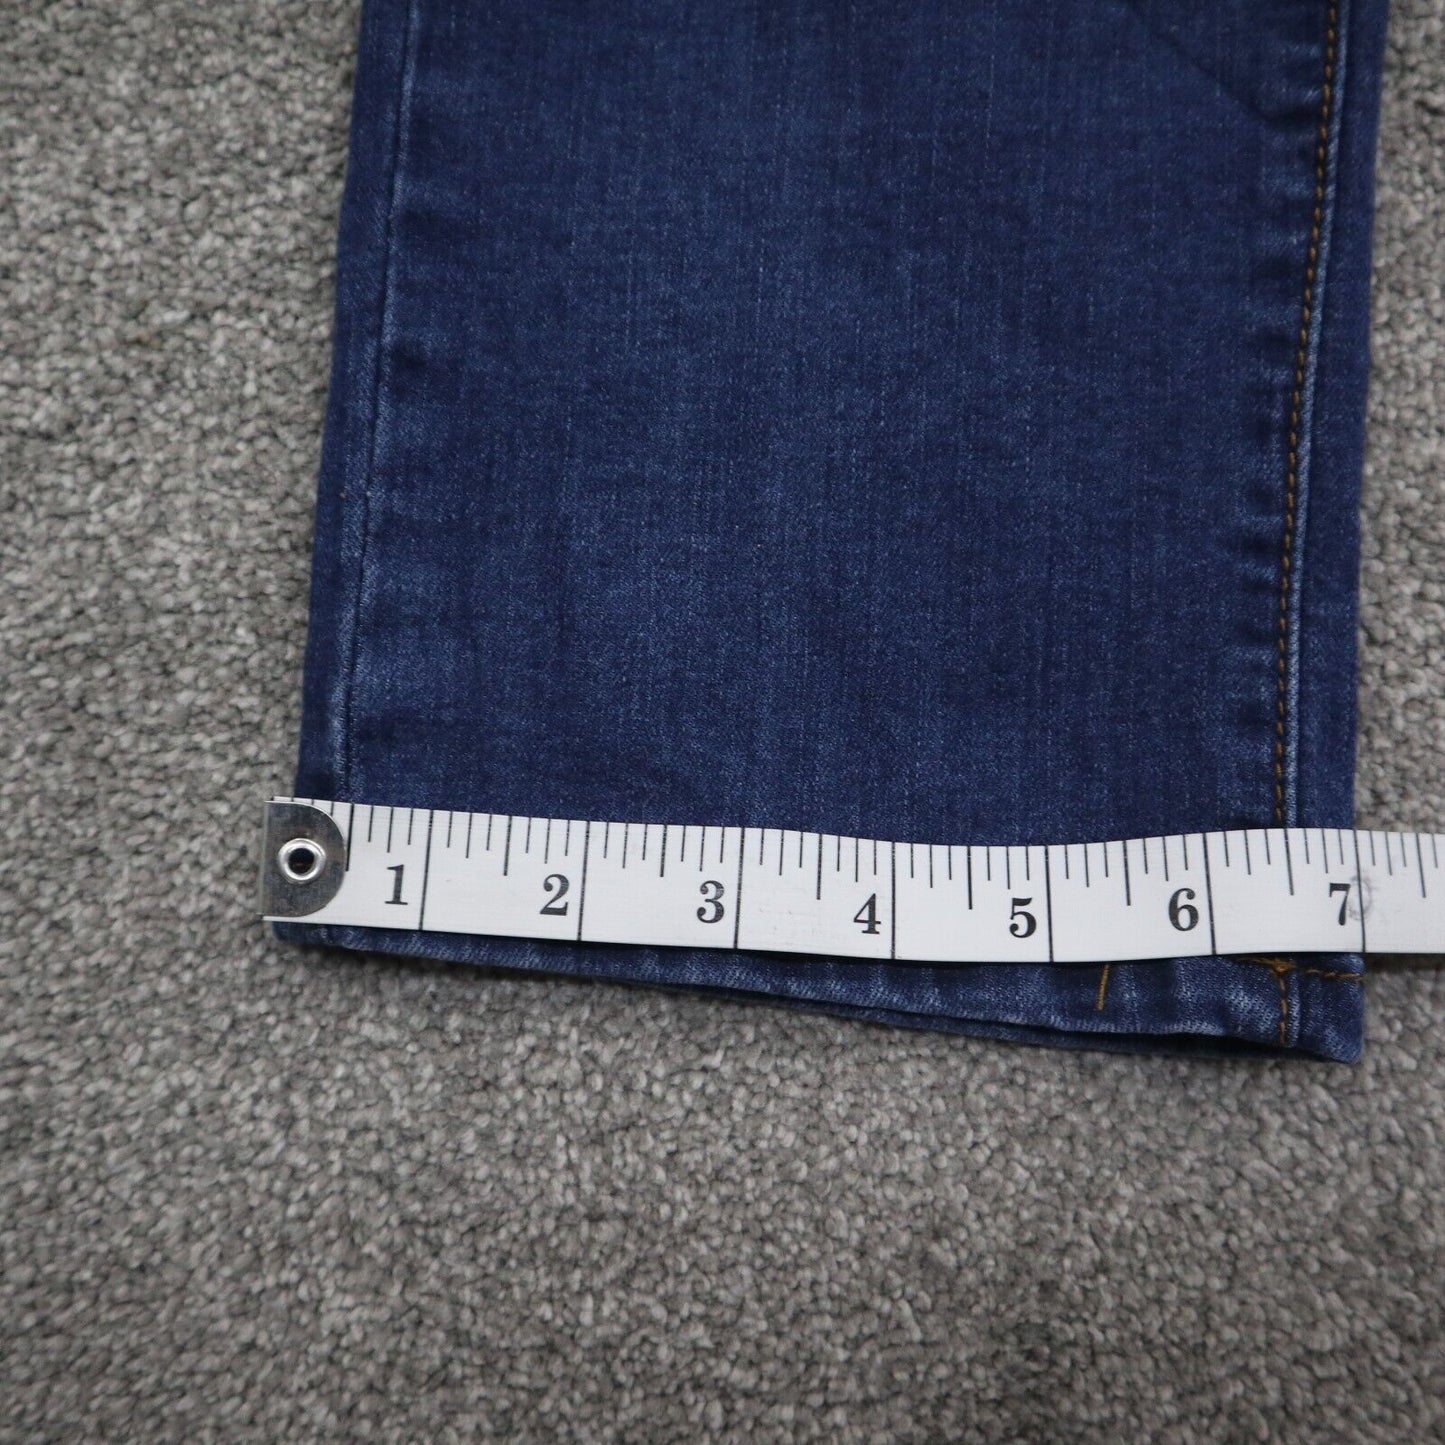 L&B Womens Distressed Jeans Slim Fit Denim High Rise Light Blue Size W32